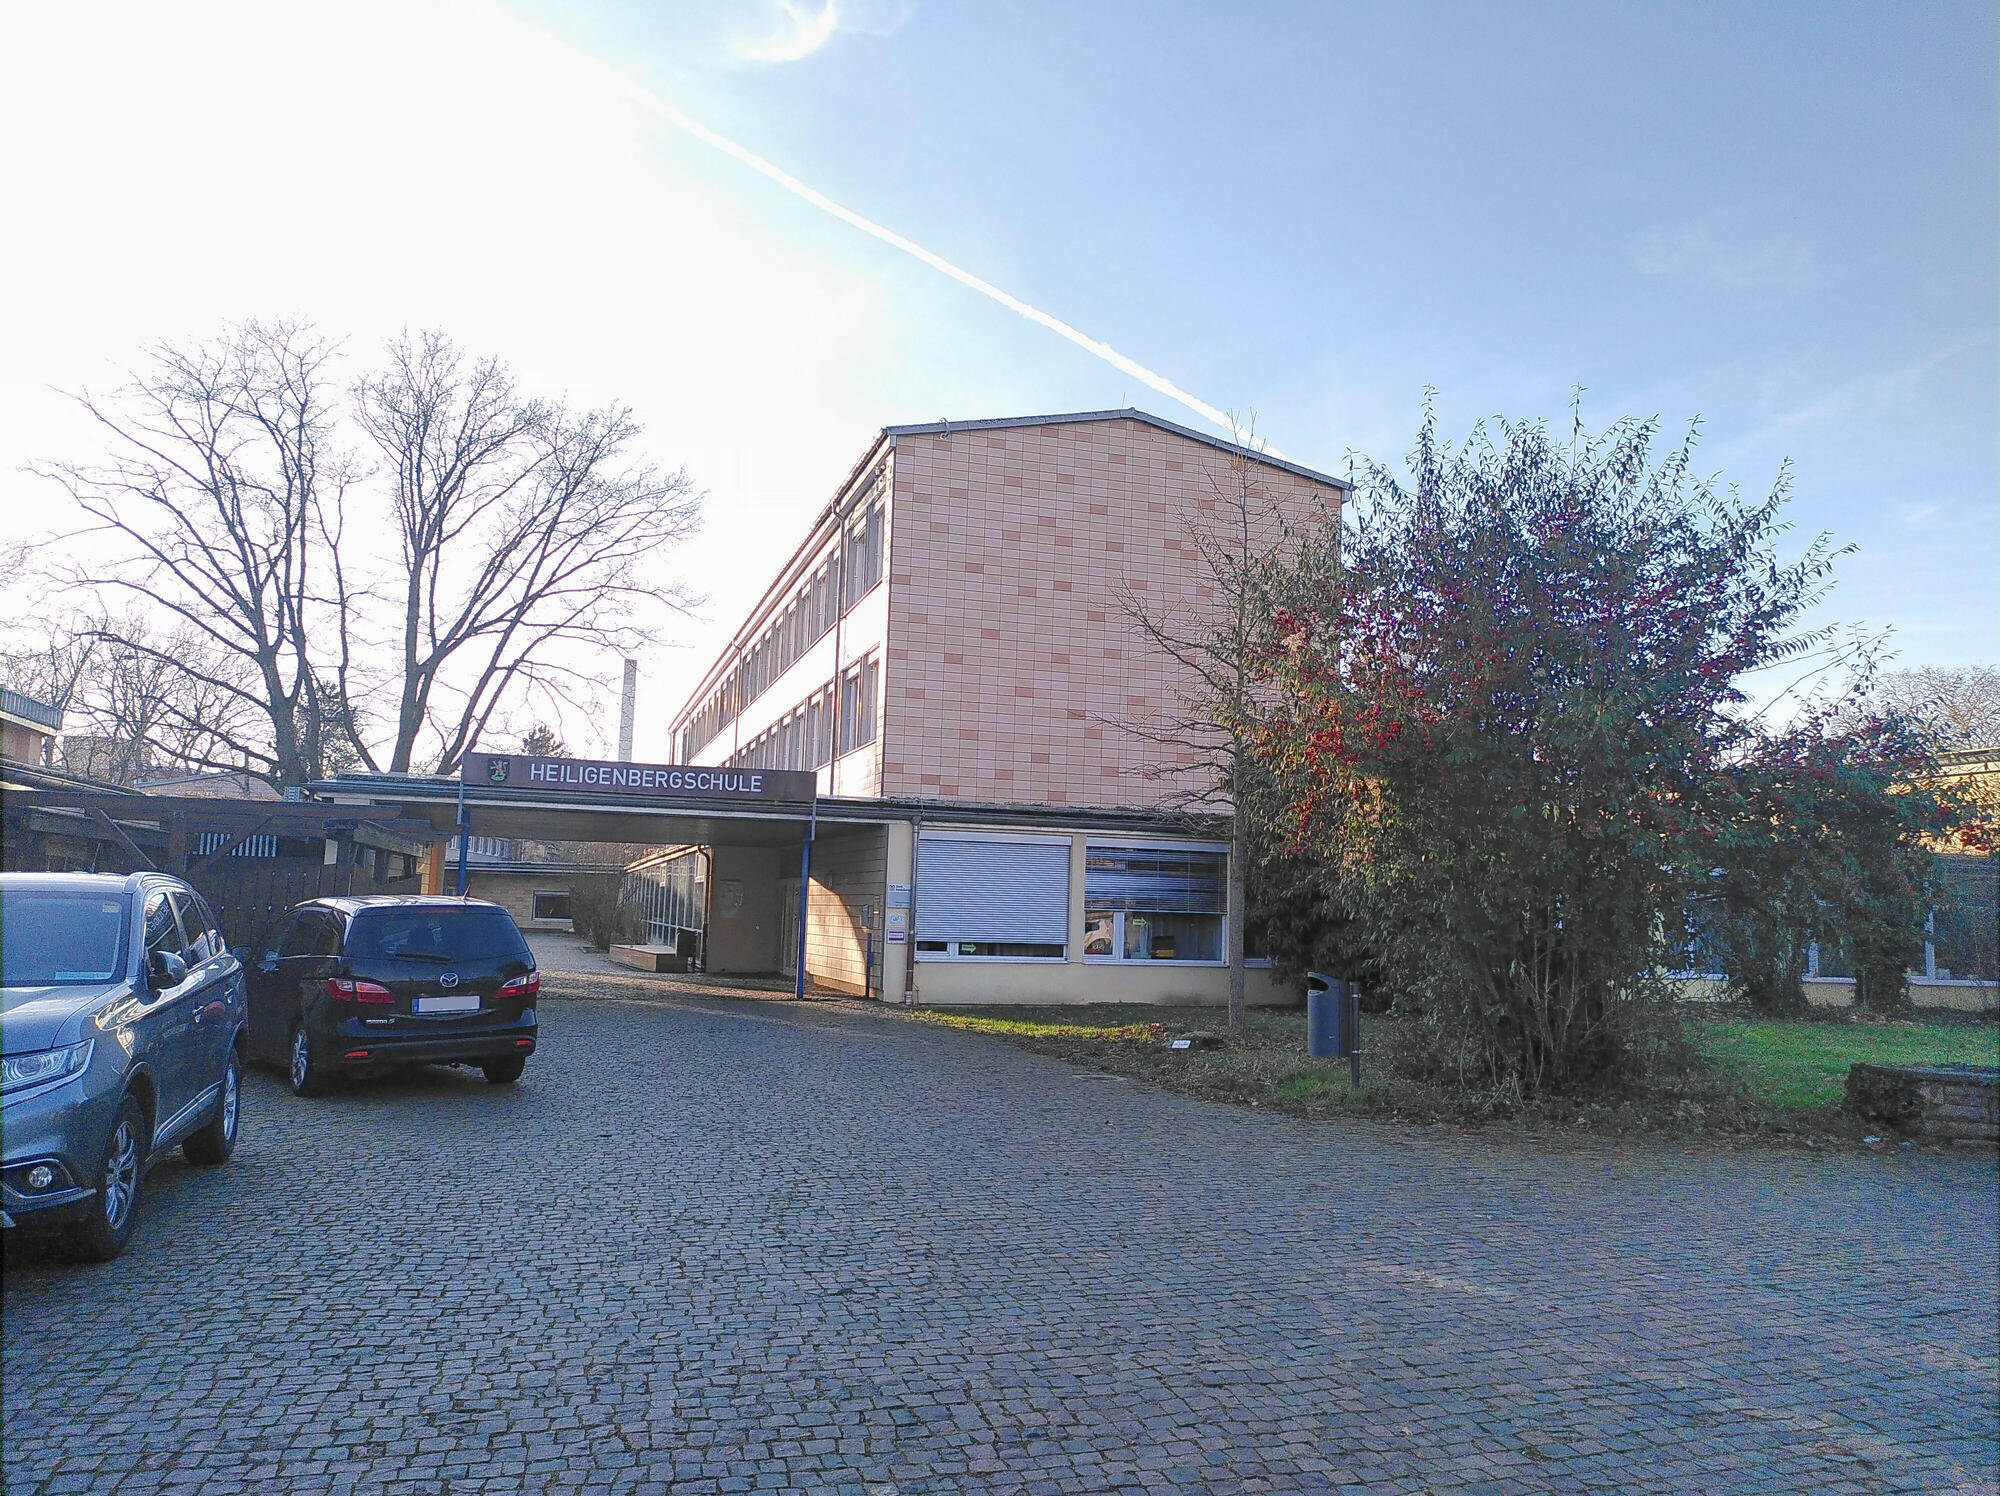 Heiligenbergschule Heidelberg 2022 01.jpg